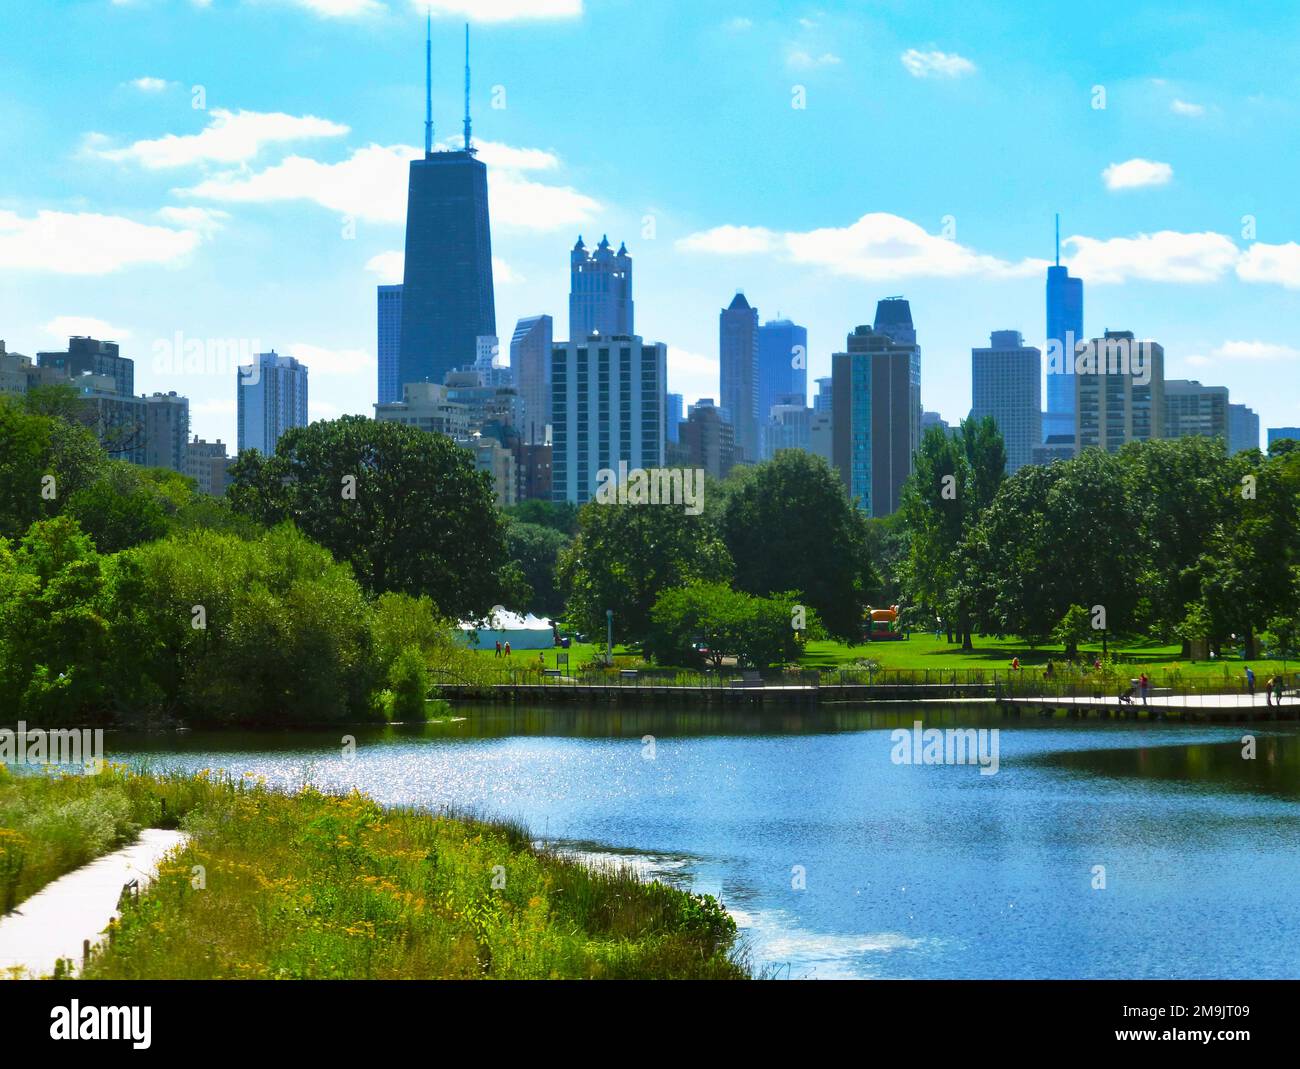 Gratte-ciel avec Lincoln Park Lagoon, Chicago, Illinois, États-Unis Banque D'Images